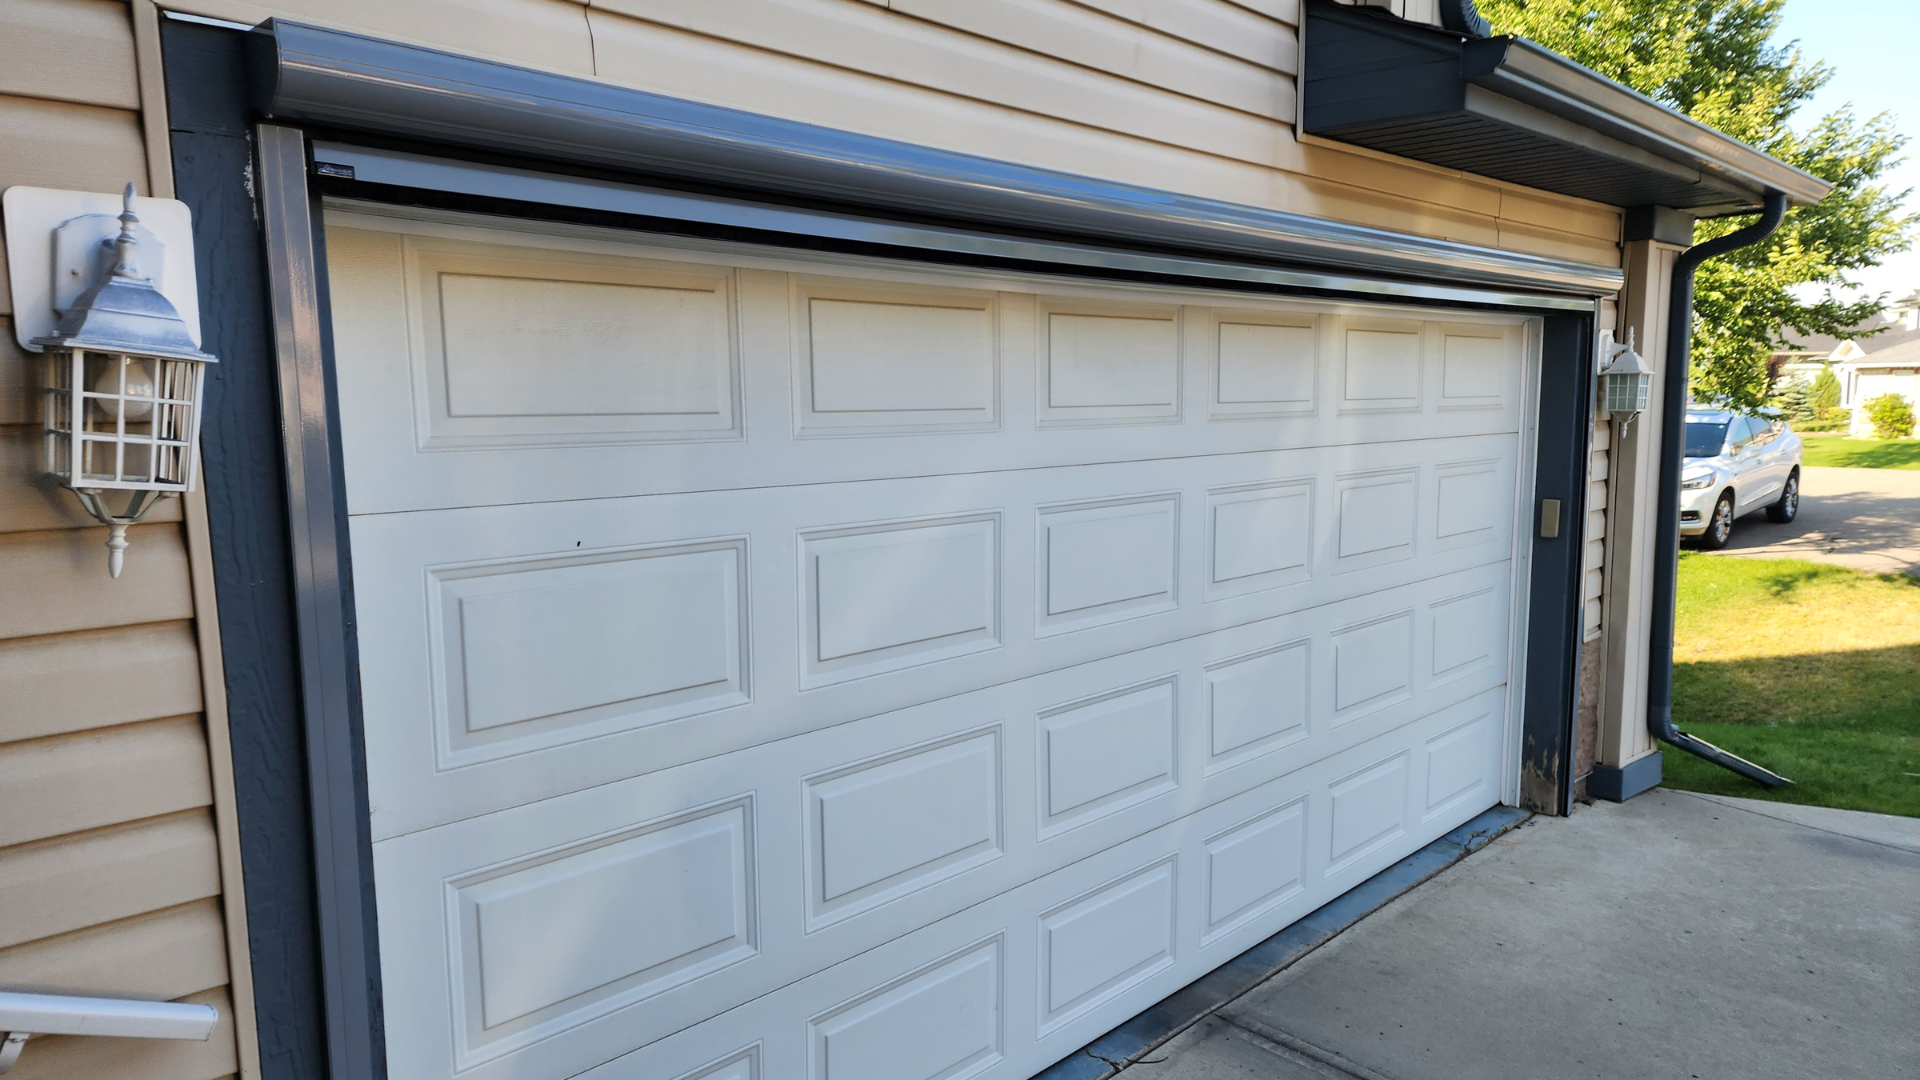 Garage with Screen Door Installed - Are Garage Door Screens Worth It?